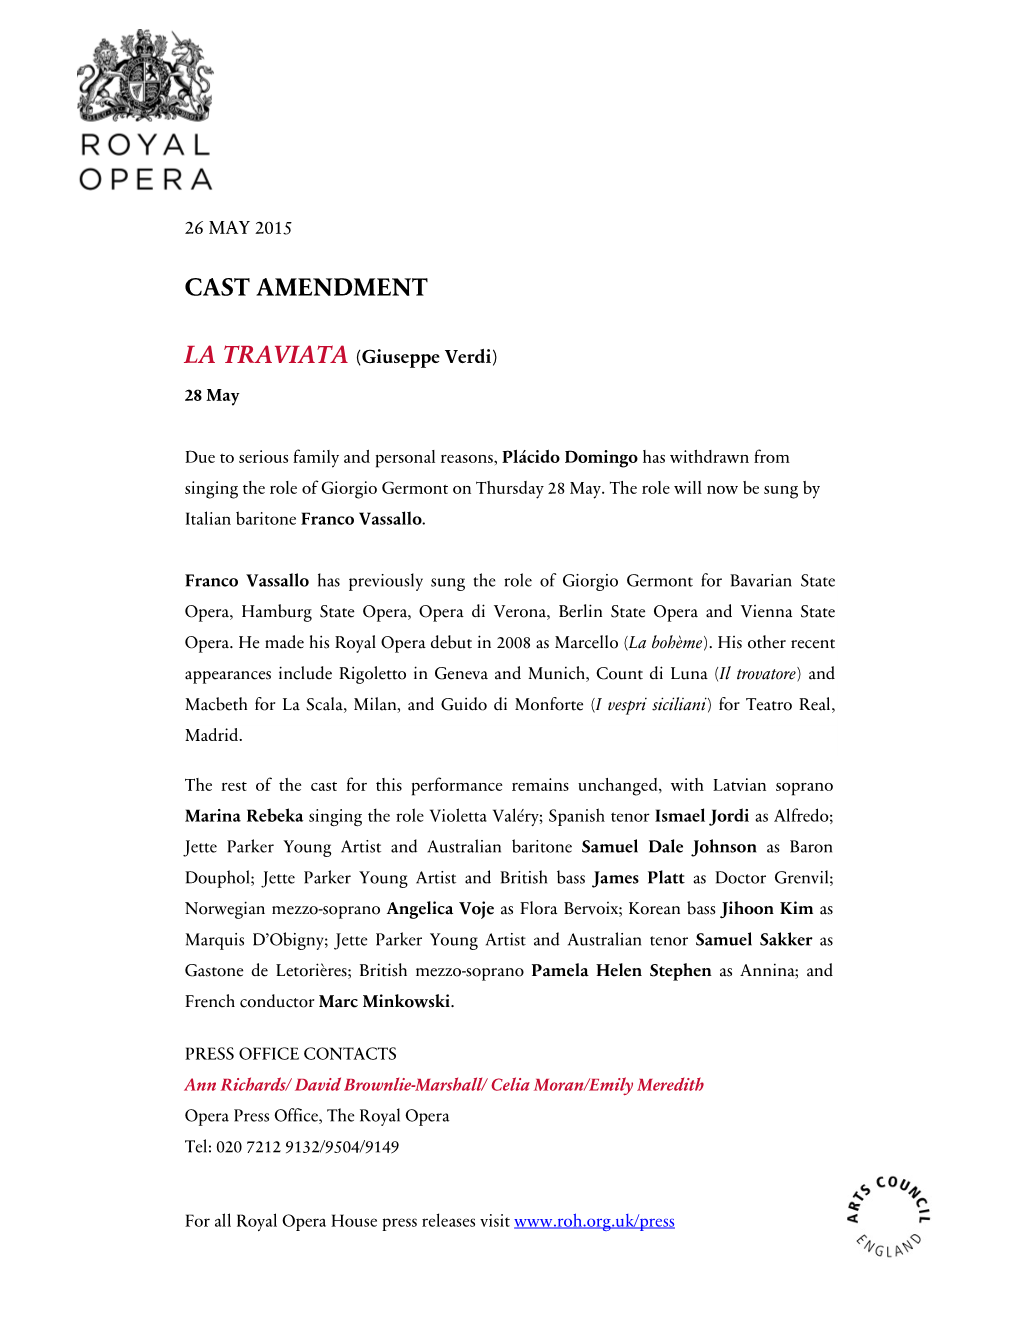 Cast Amendment La Traviata